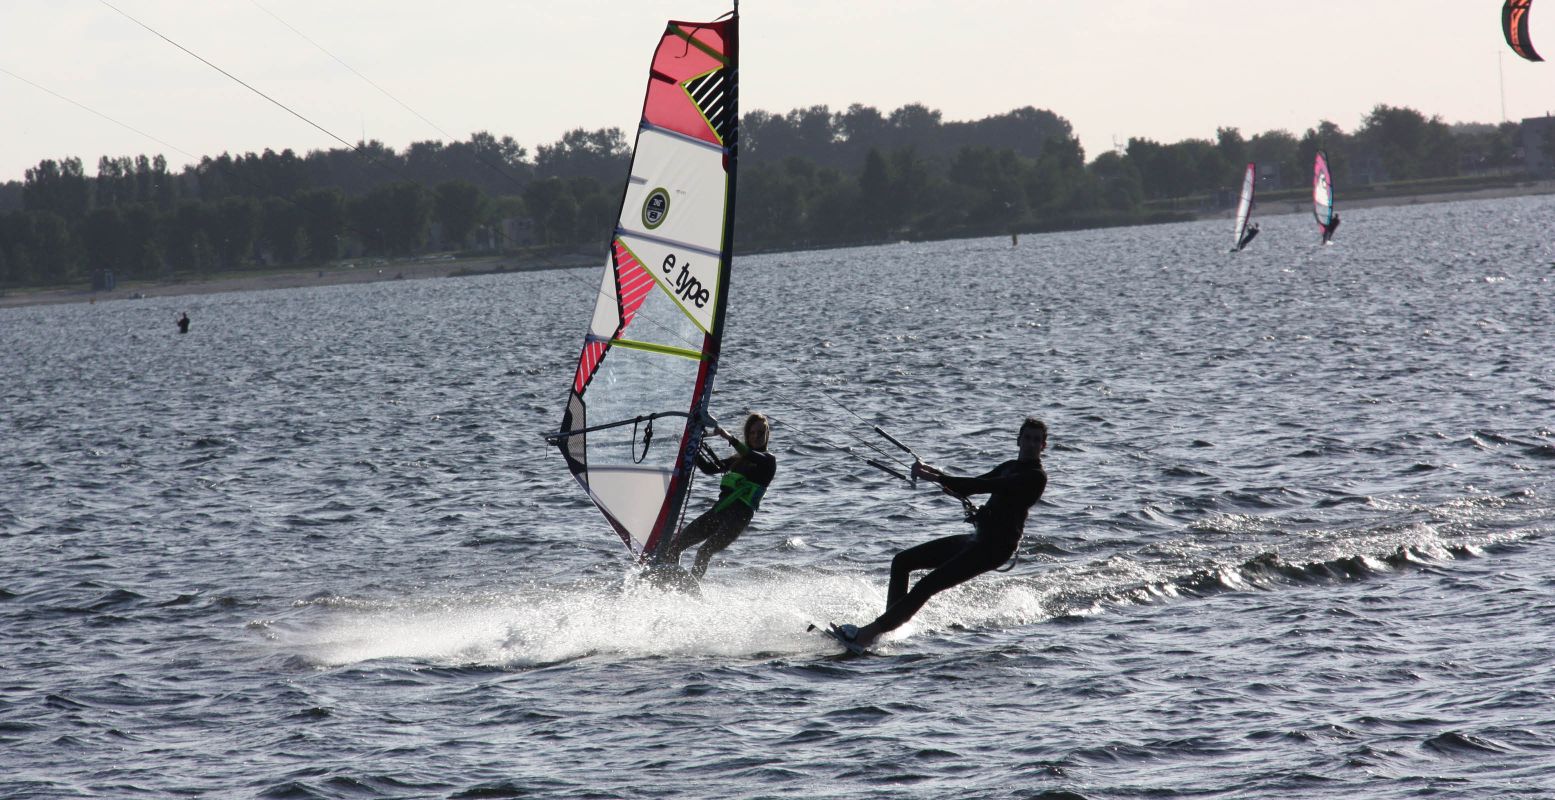 Boek een lesje kitesurfen bij Telstar Surfclub of neem een duik op het recreatiestrand. Foto: Telstar Surfclub